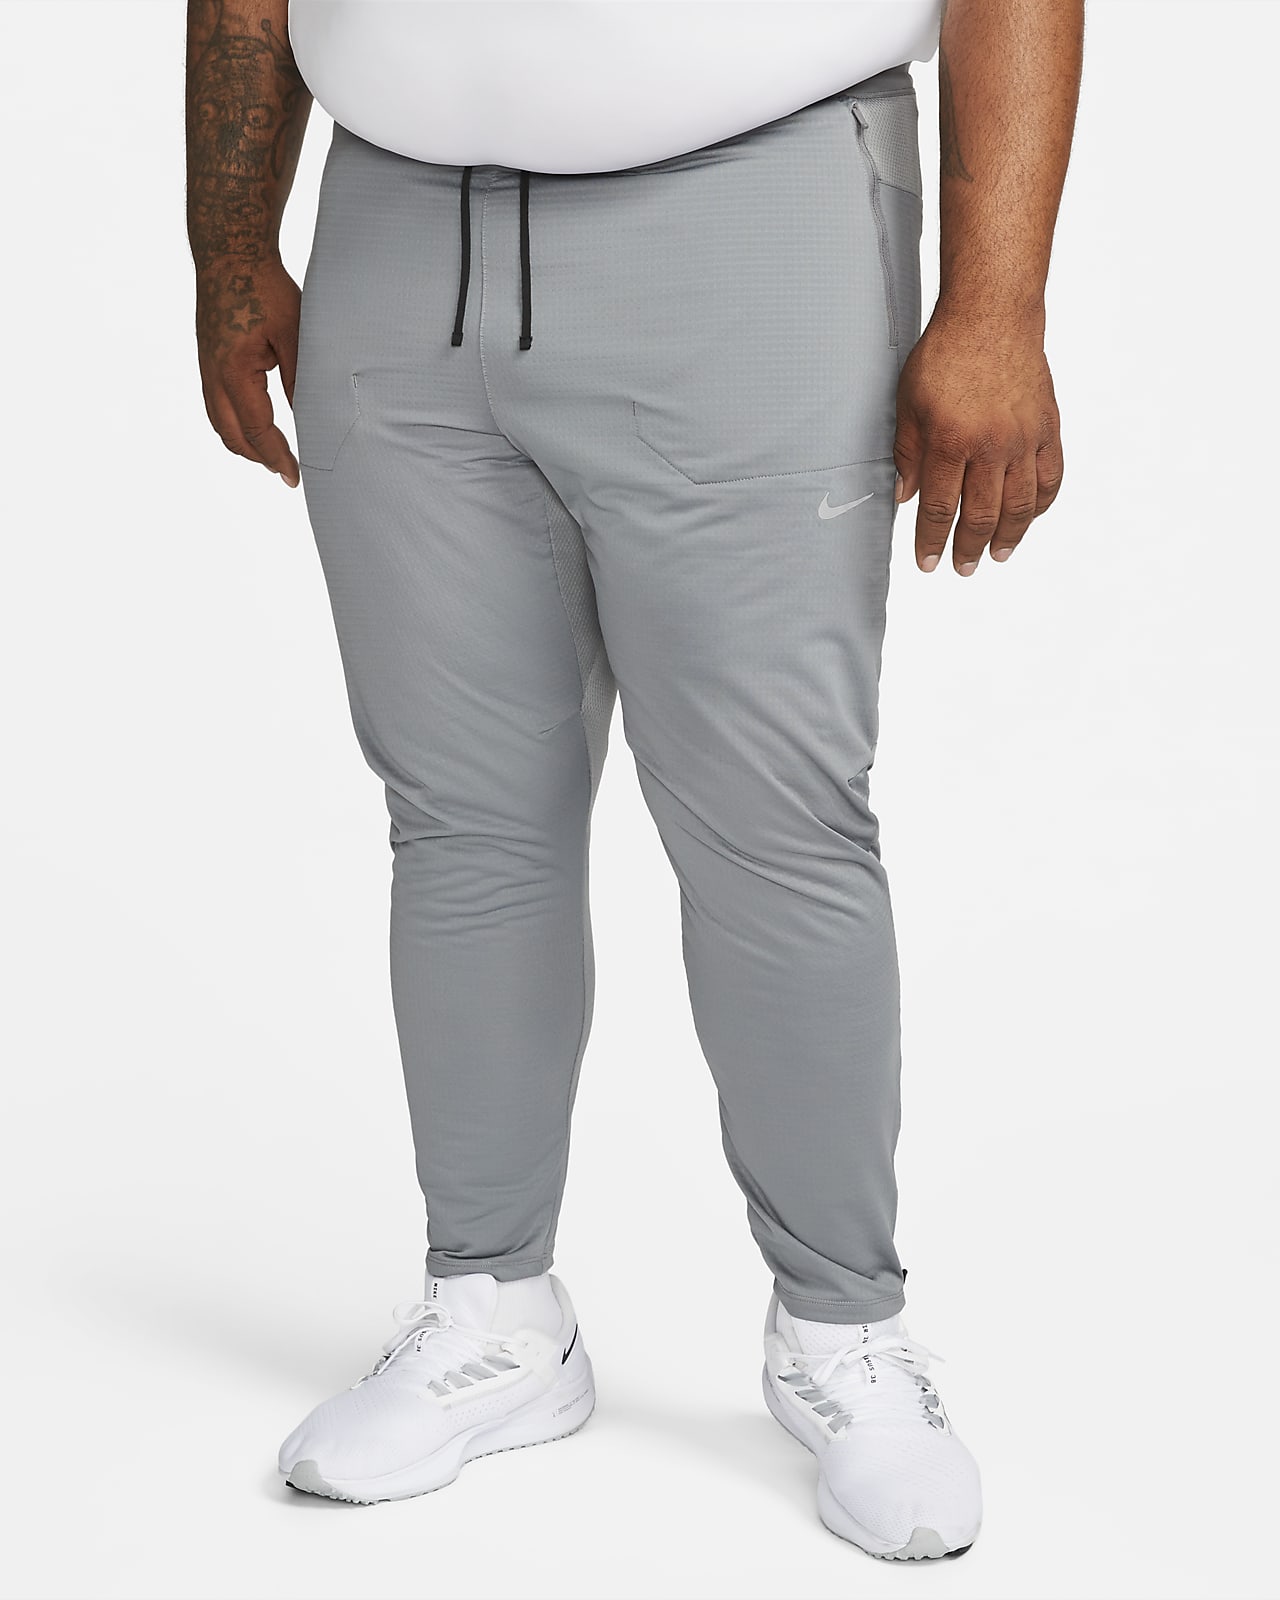 Pantalon de running en maille Dri-FIT Nike Phenom pour homme